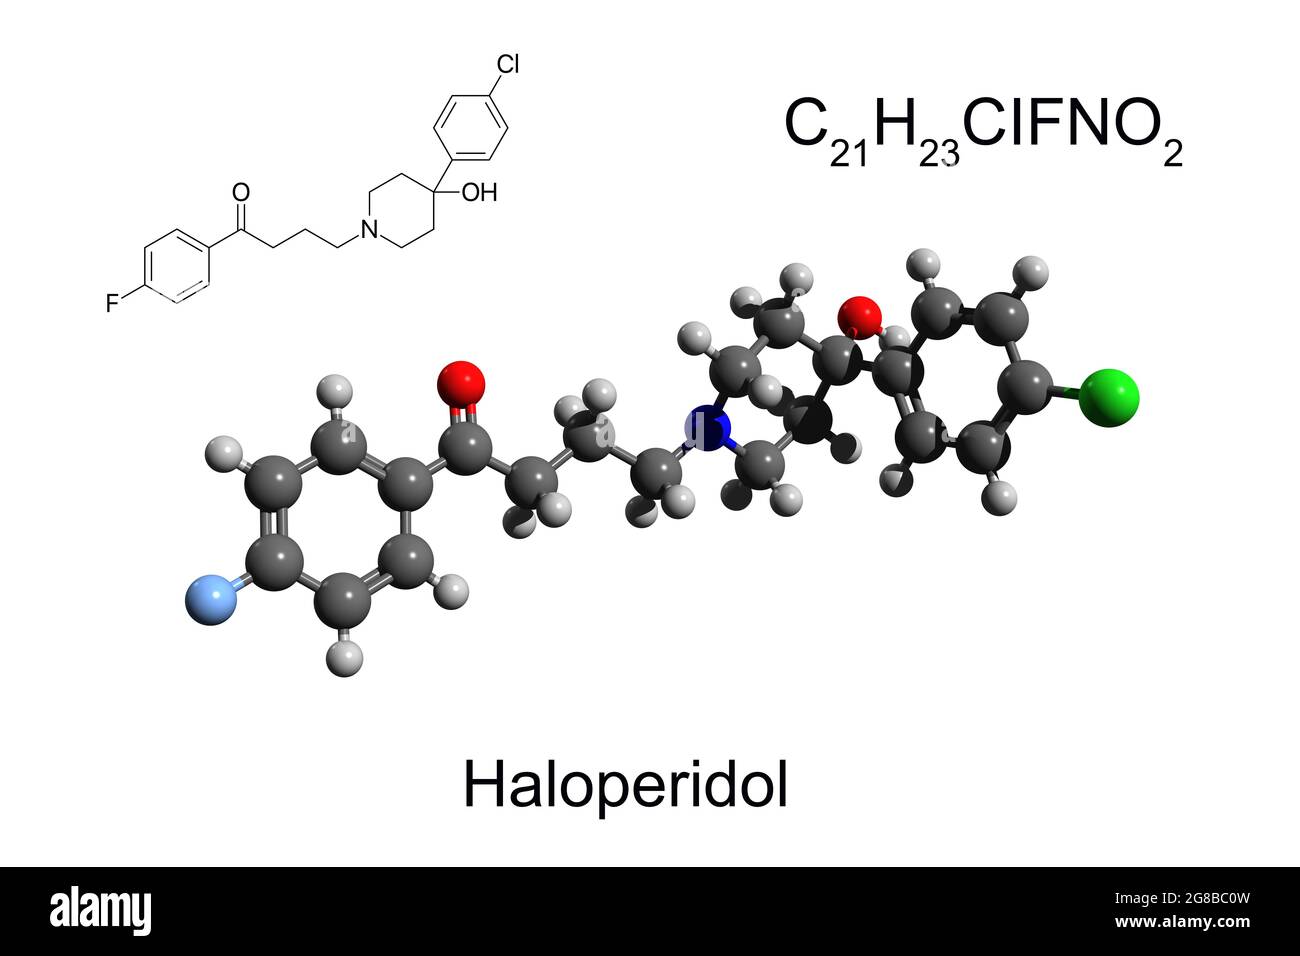 Chemical formula, skeletal formula, and ball-and-stick model of antipsychotic drug haloperidol, white background Stock Photo